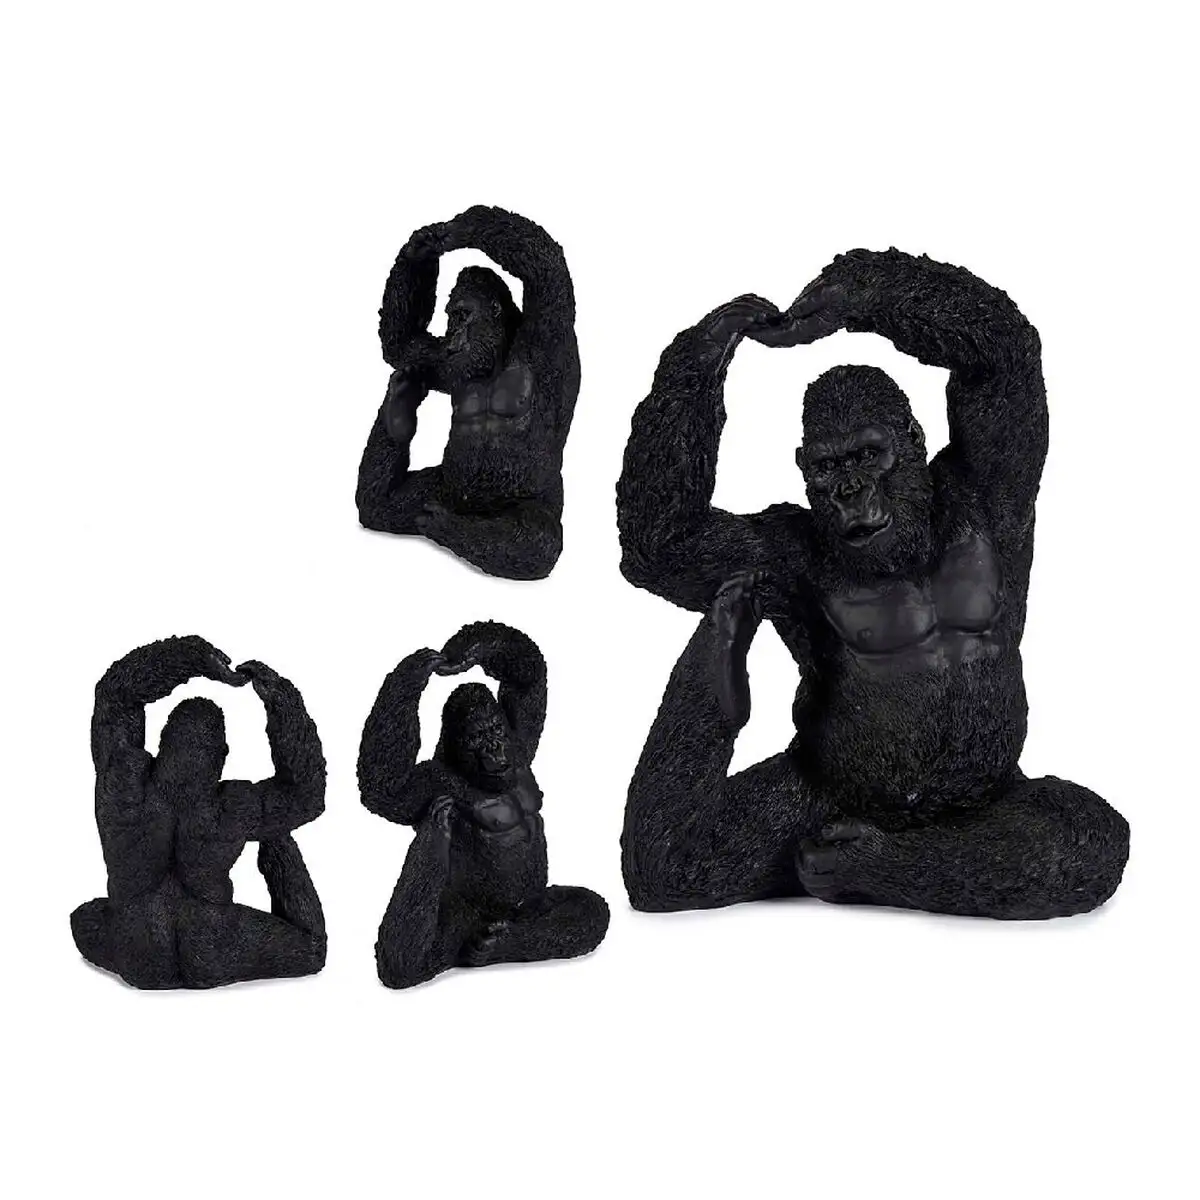 Figurine decorative gorille yoga noir 15 2 x 31 5 x 26 5 cm_3651. DIAYTAR SENEGAL - L'Artisanat à Portée de Clic. Découvrez notre boutique en ligne pour trouver des produits uniques qui célèbrent la créativité et l'artisanat sénégalais.